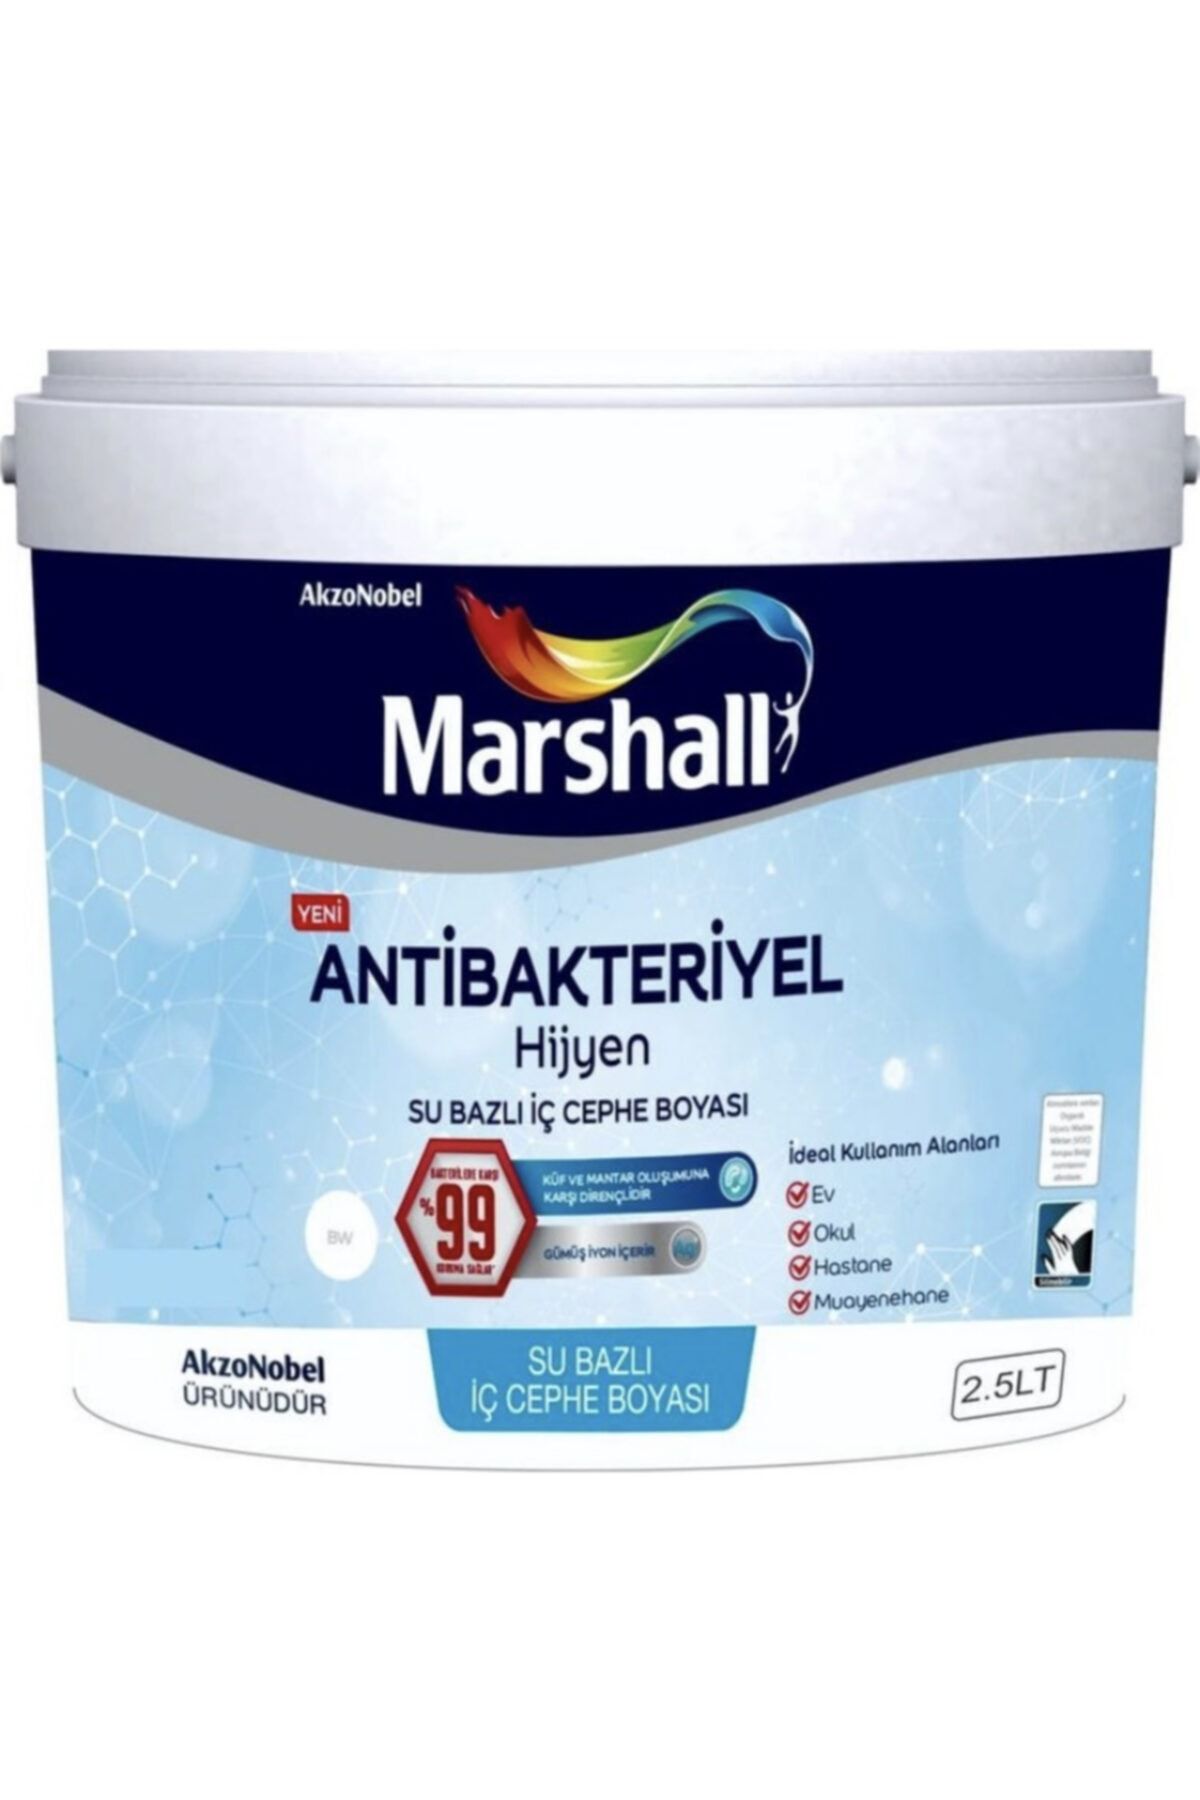 Marshall Hijyen Antibakteriyel Boya 2.5lt Deniz Kabuğu ( Makinada Renklendirilir)